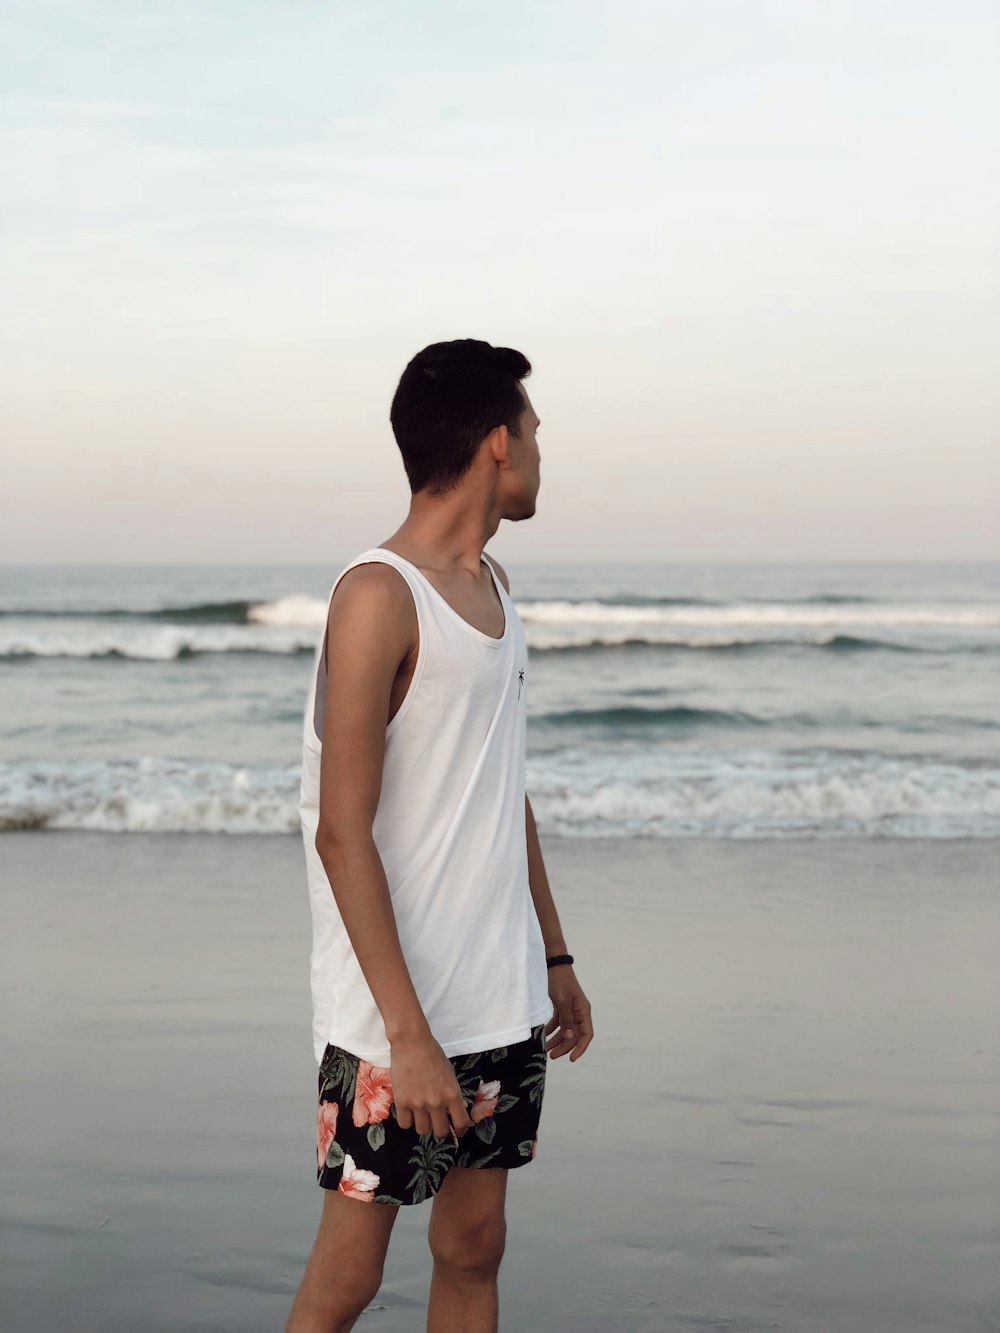 Imágenes de Hombre De La Playa | Descarga imágenes gratuitas en Unsplash